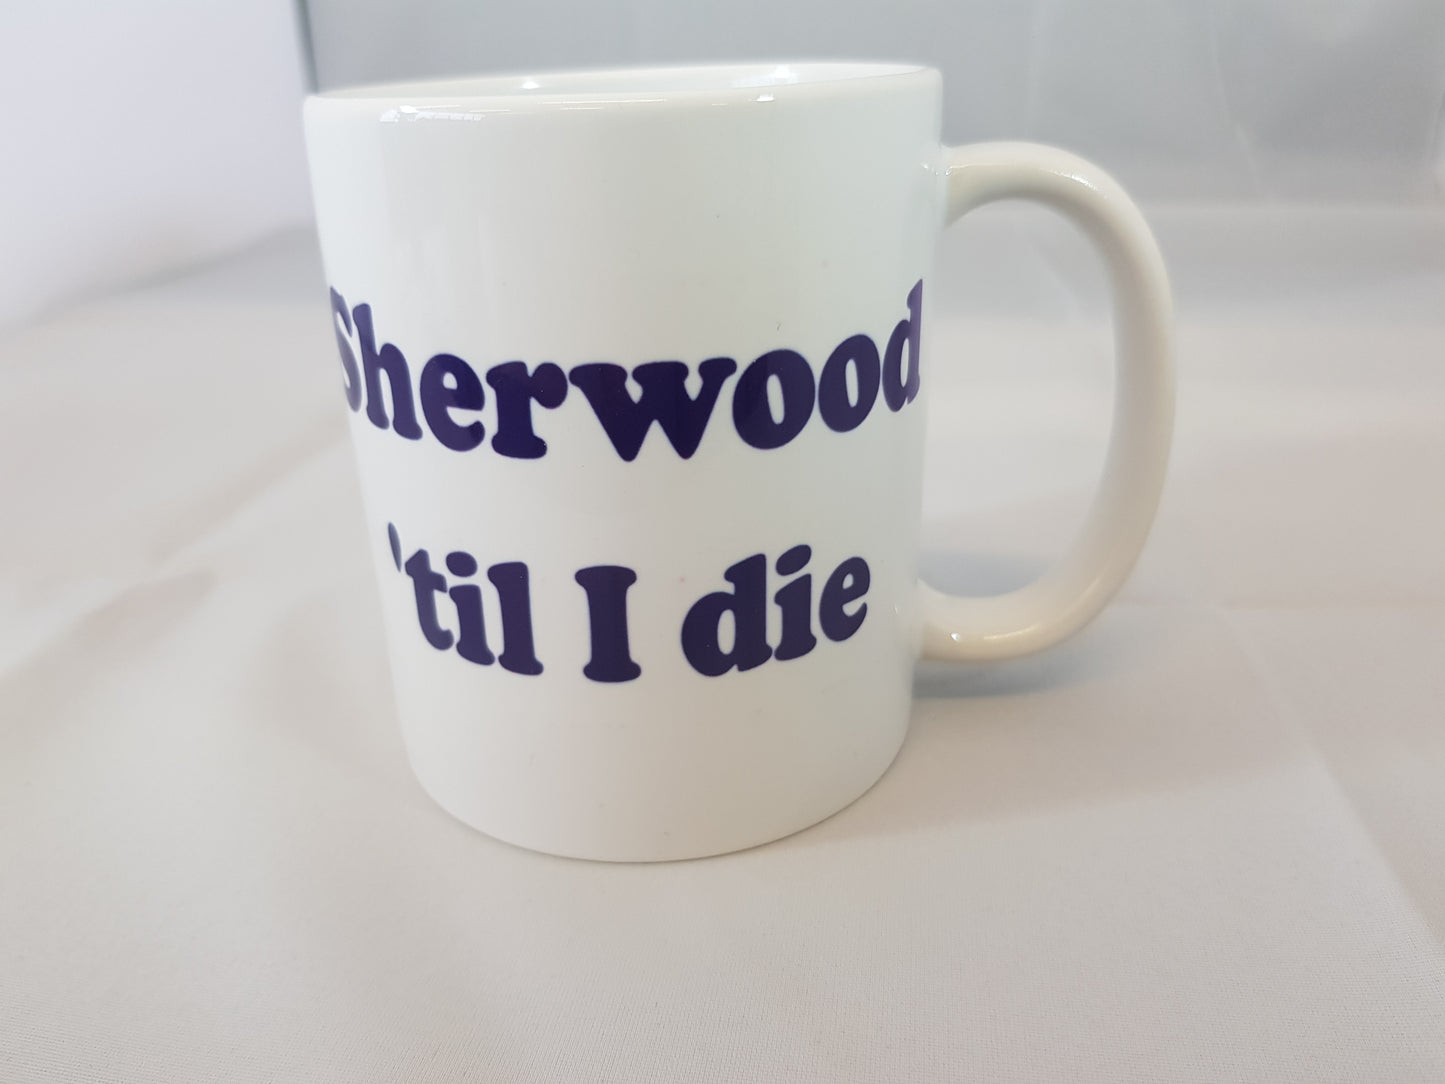 Sherwood FC ('til I die) Mug